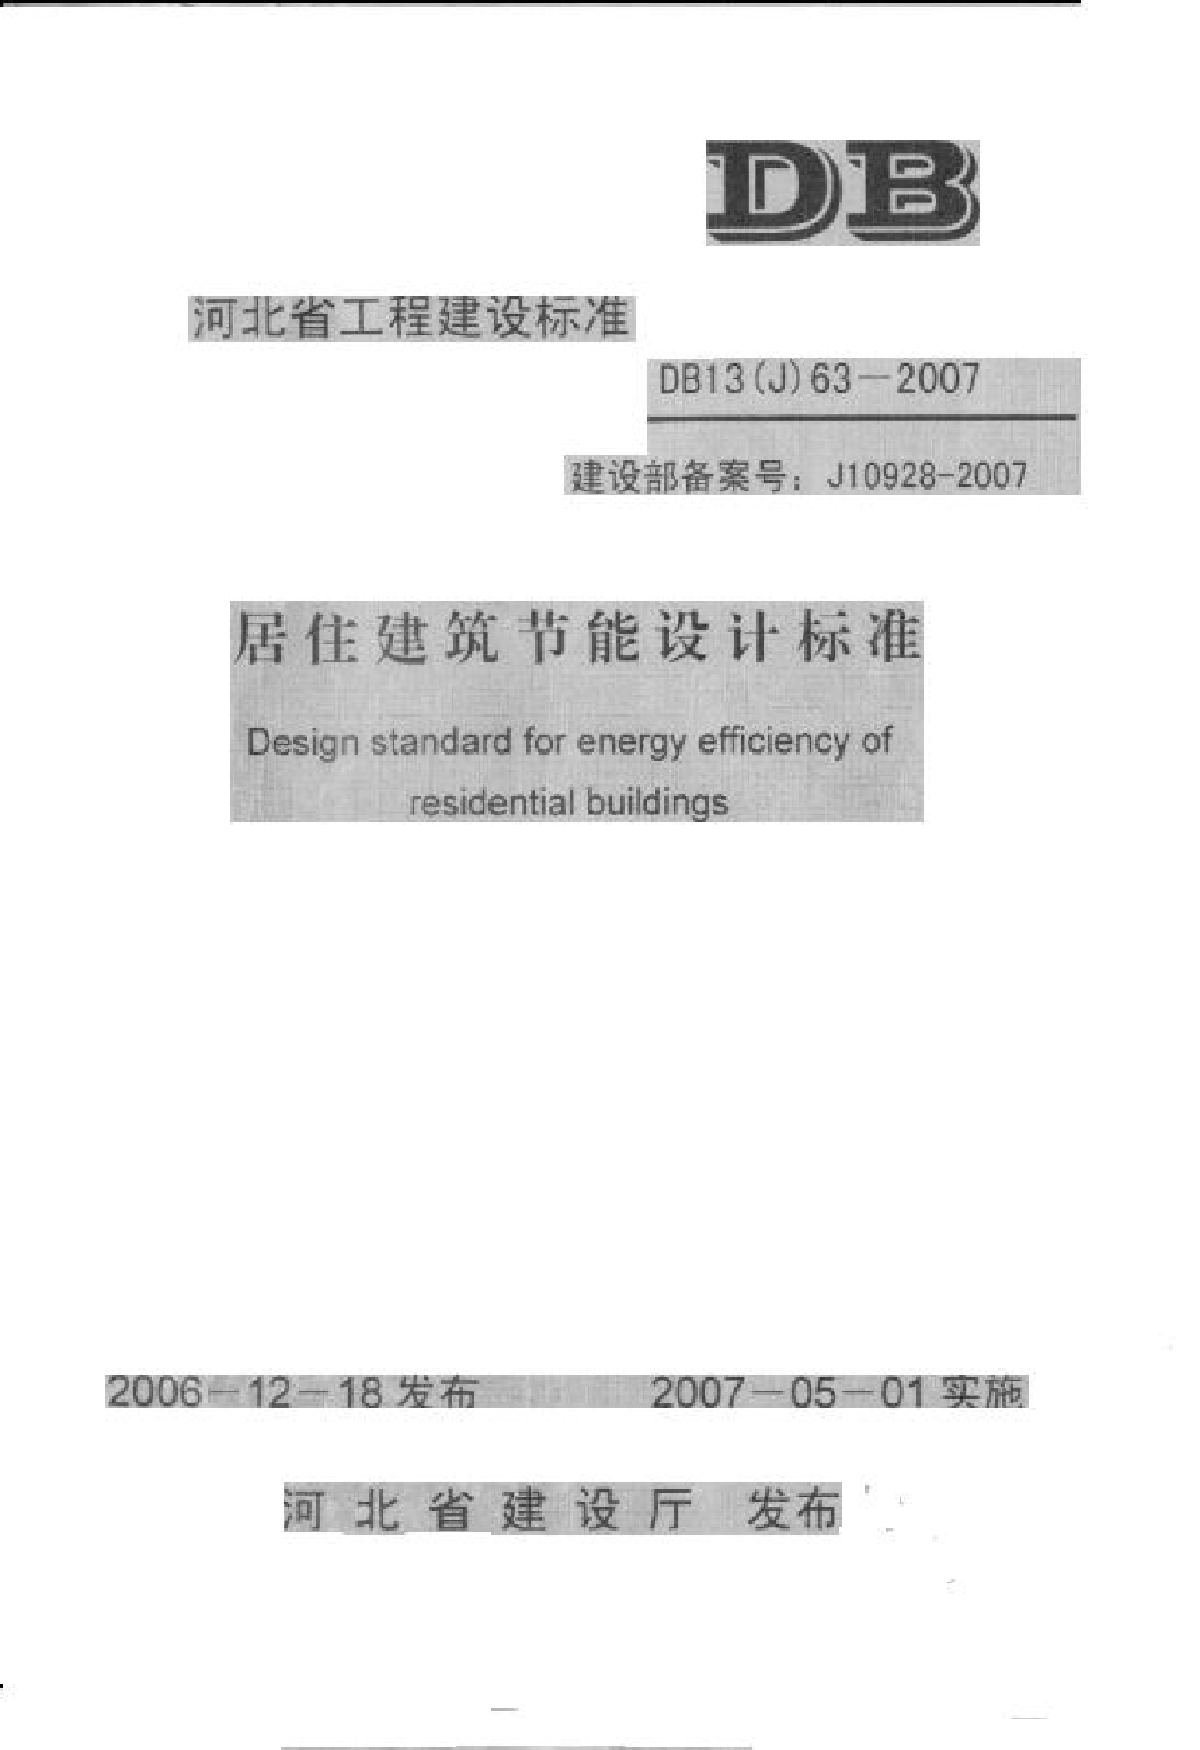 河北省居住建筑节能设计标准DB13(J)63-2007